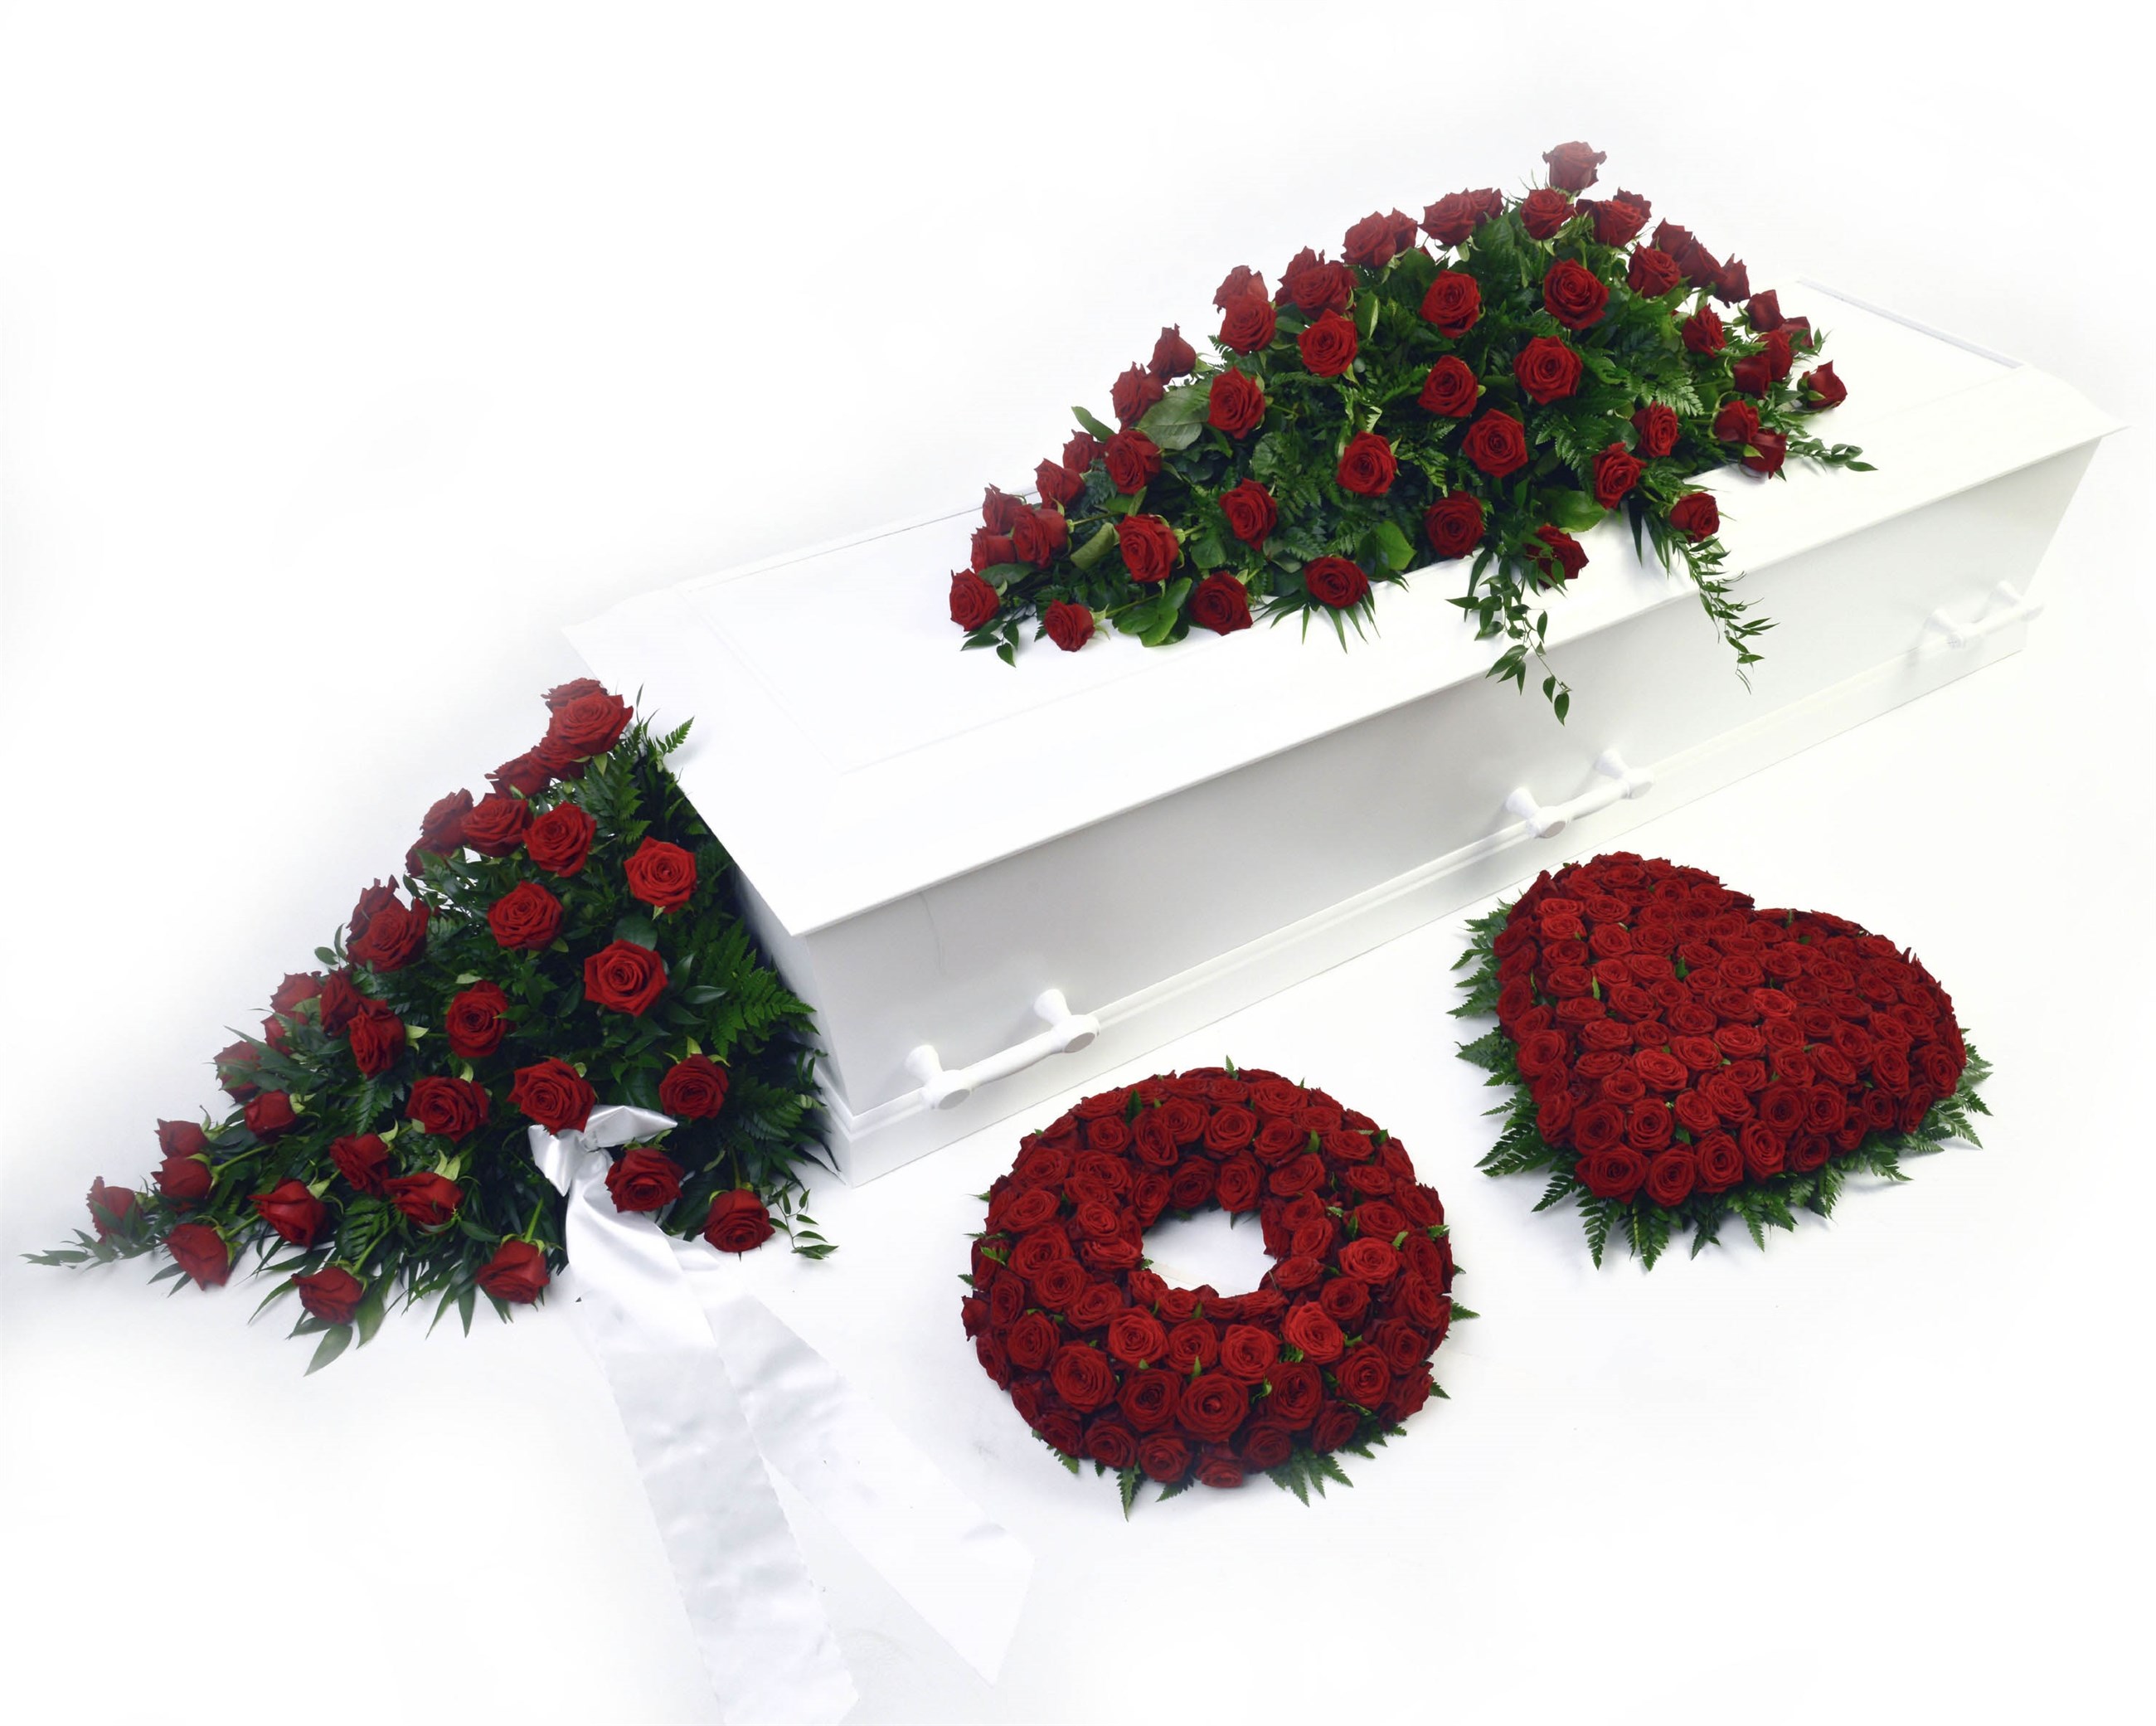 bårebuket og blomster til begravelse